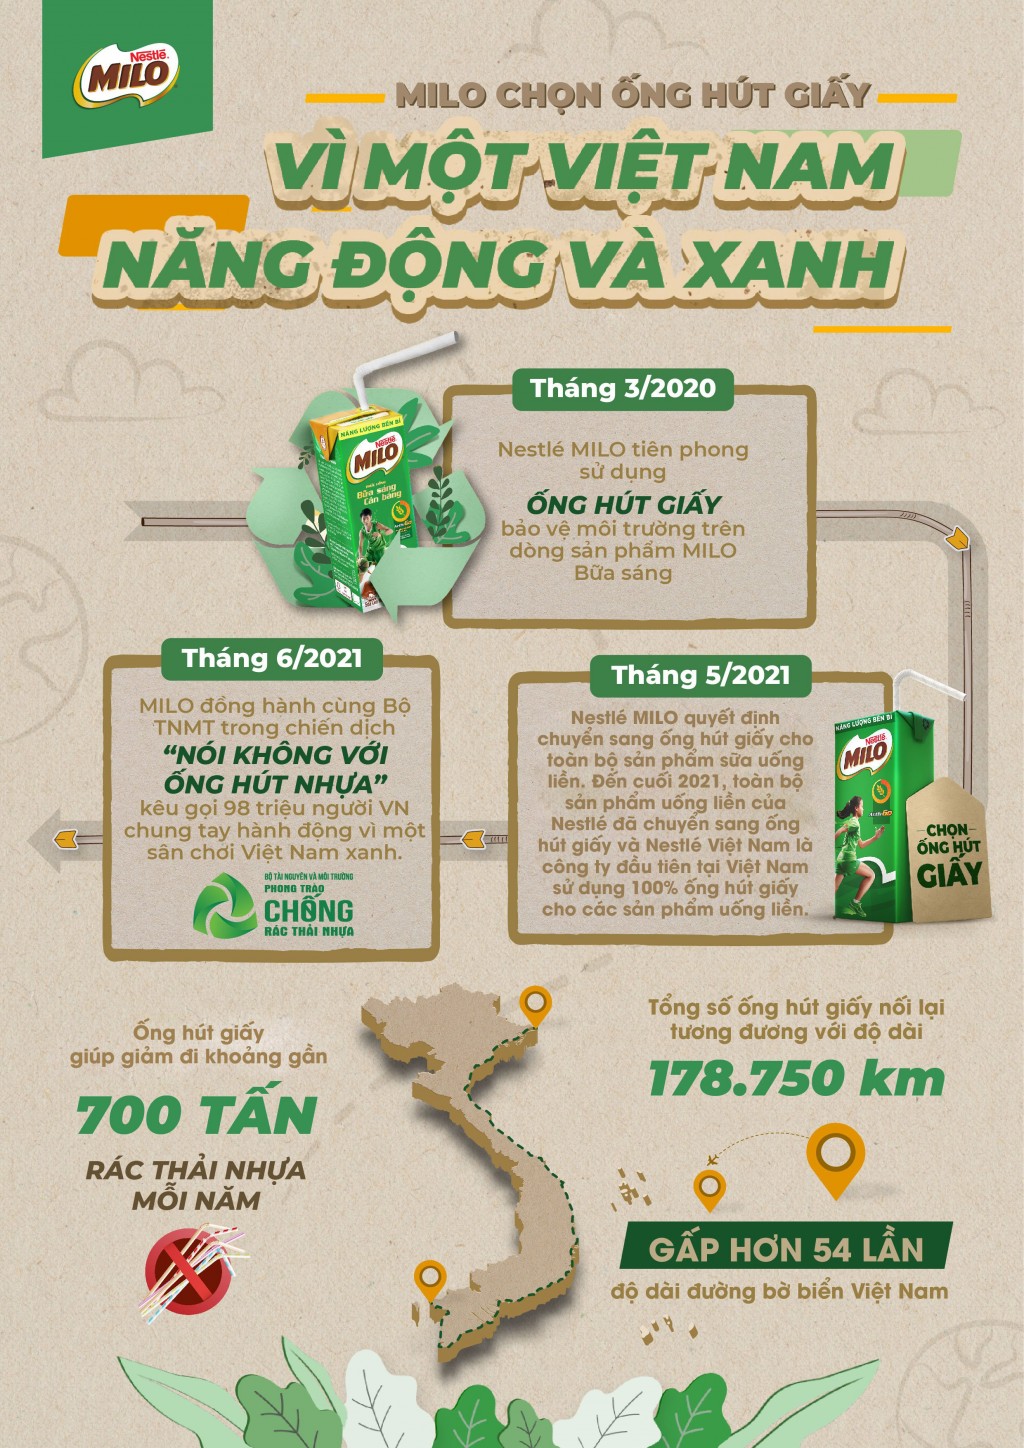 Nestlé Việt Nam chia sẻ các sáng kiến sản xuất theo mô hình kinh tế tuần hoàn, hướng tới mục tiêu phát thải ròng bằng 0 vào năm 2050  - Ảnh 5.